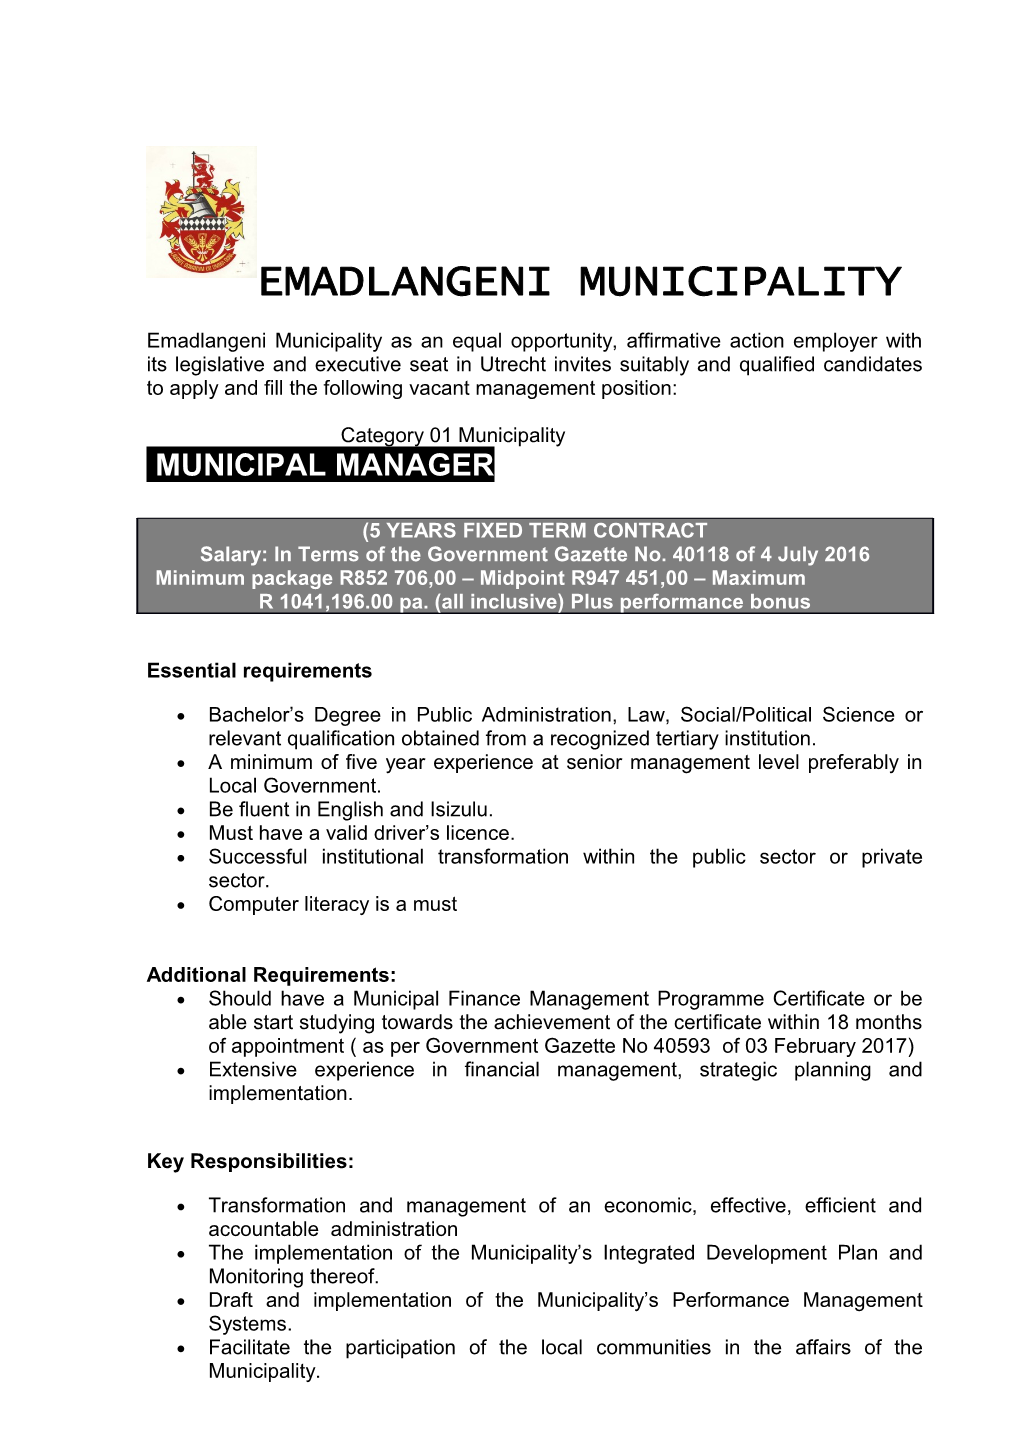 Emadlangeni Municipality